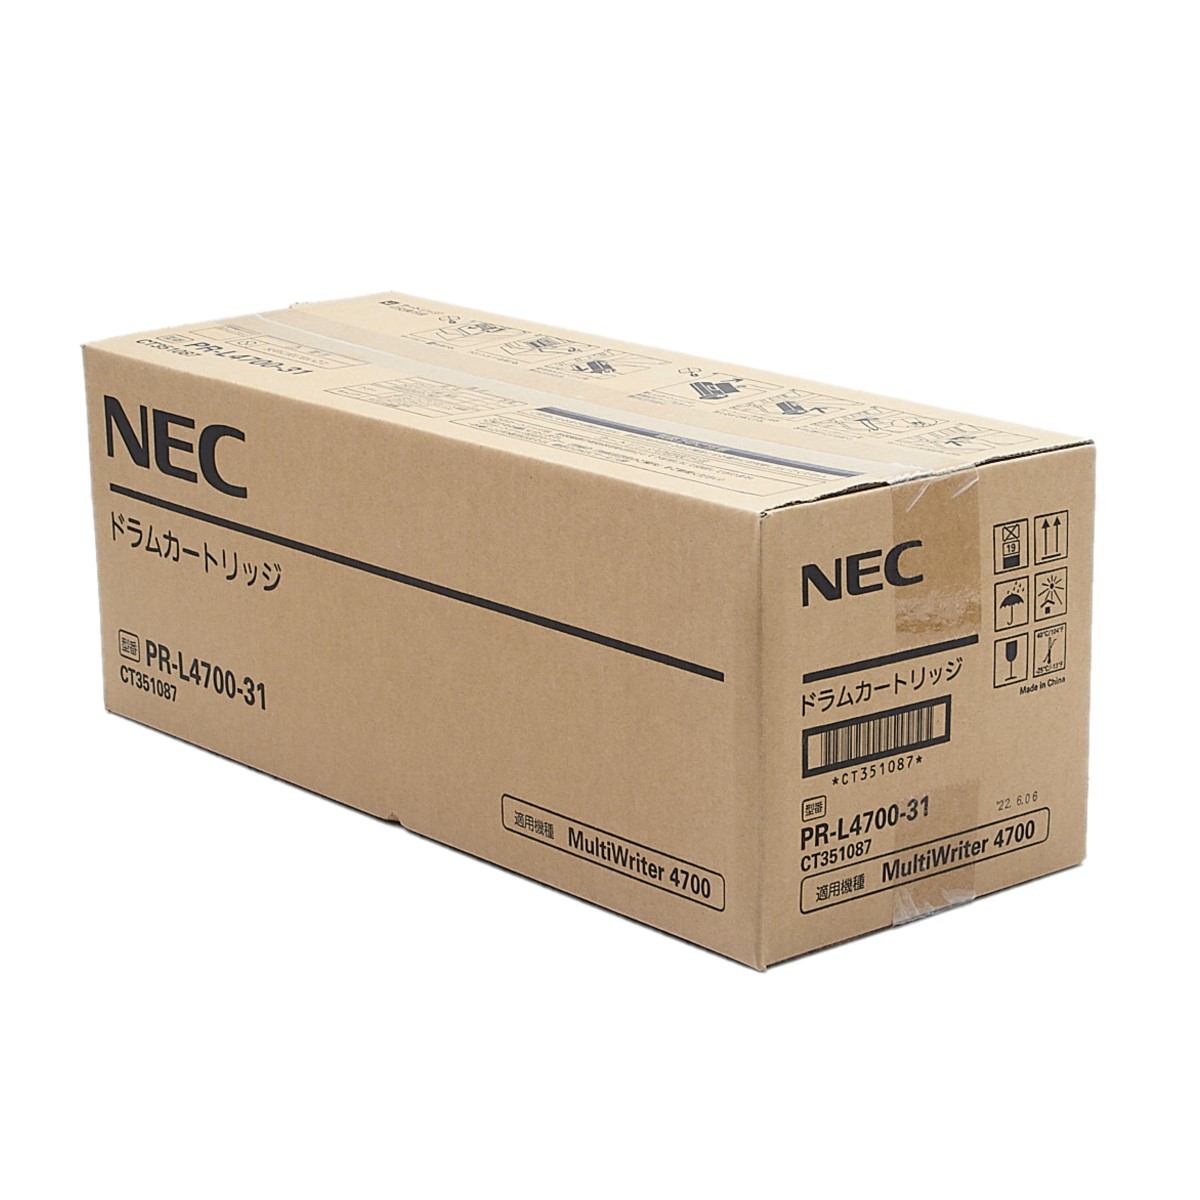 国際ブランド】 送料無料!! NEC 約57000 用 印字枚数 4700 MultiWriter